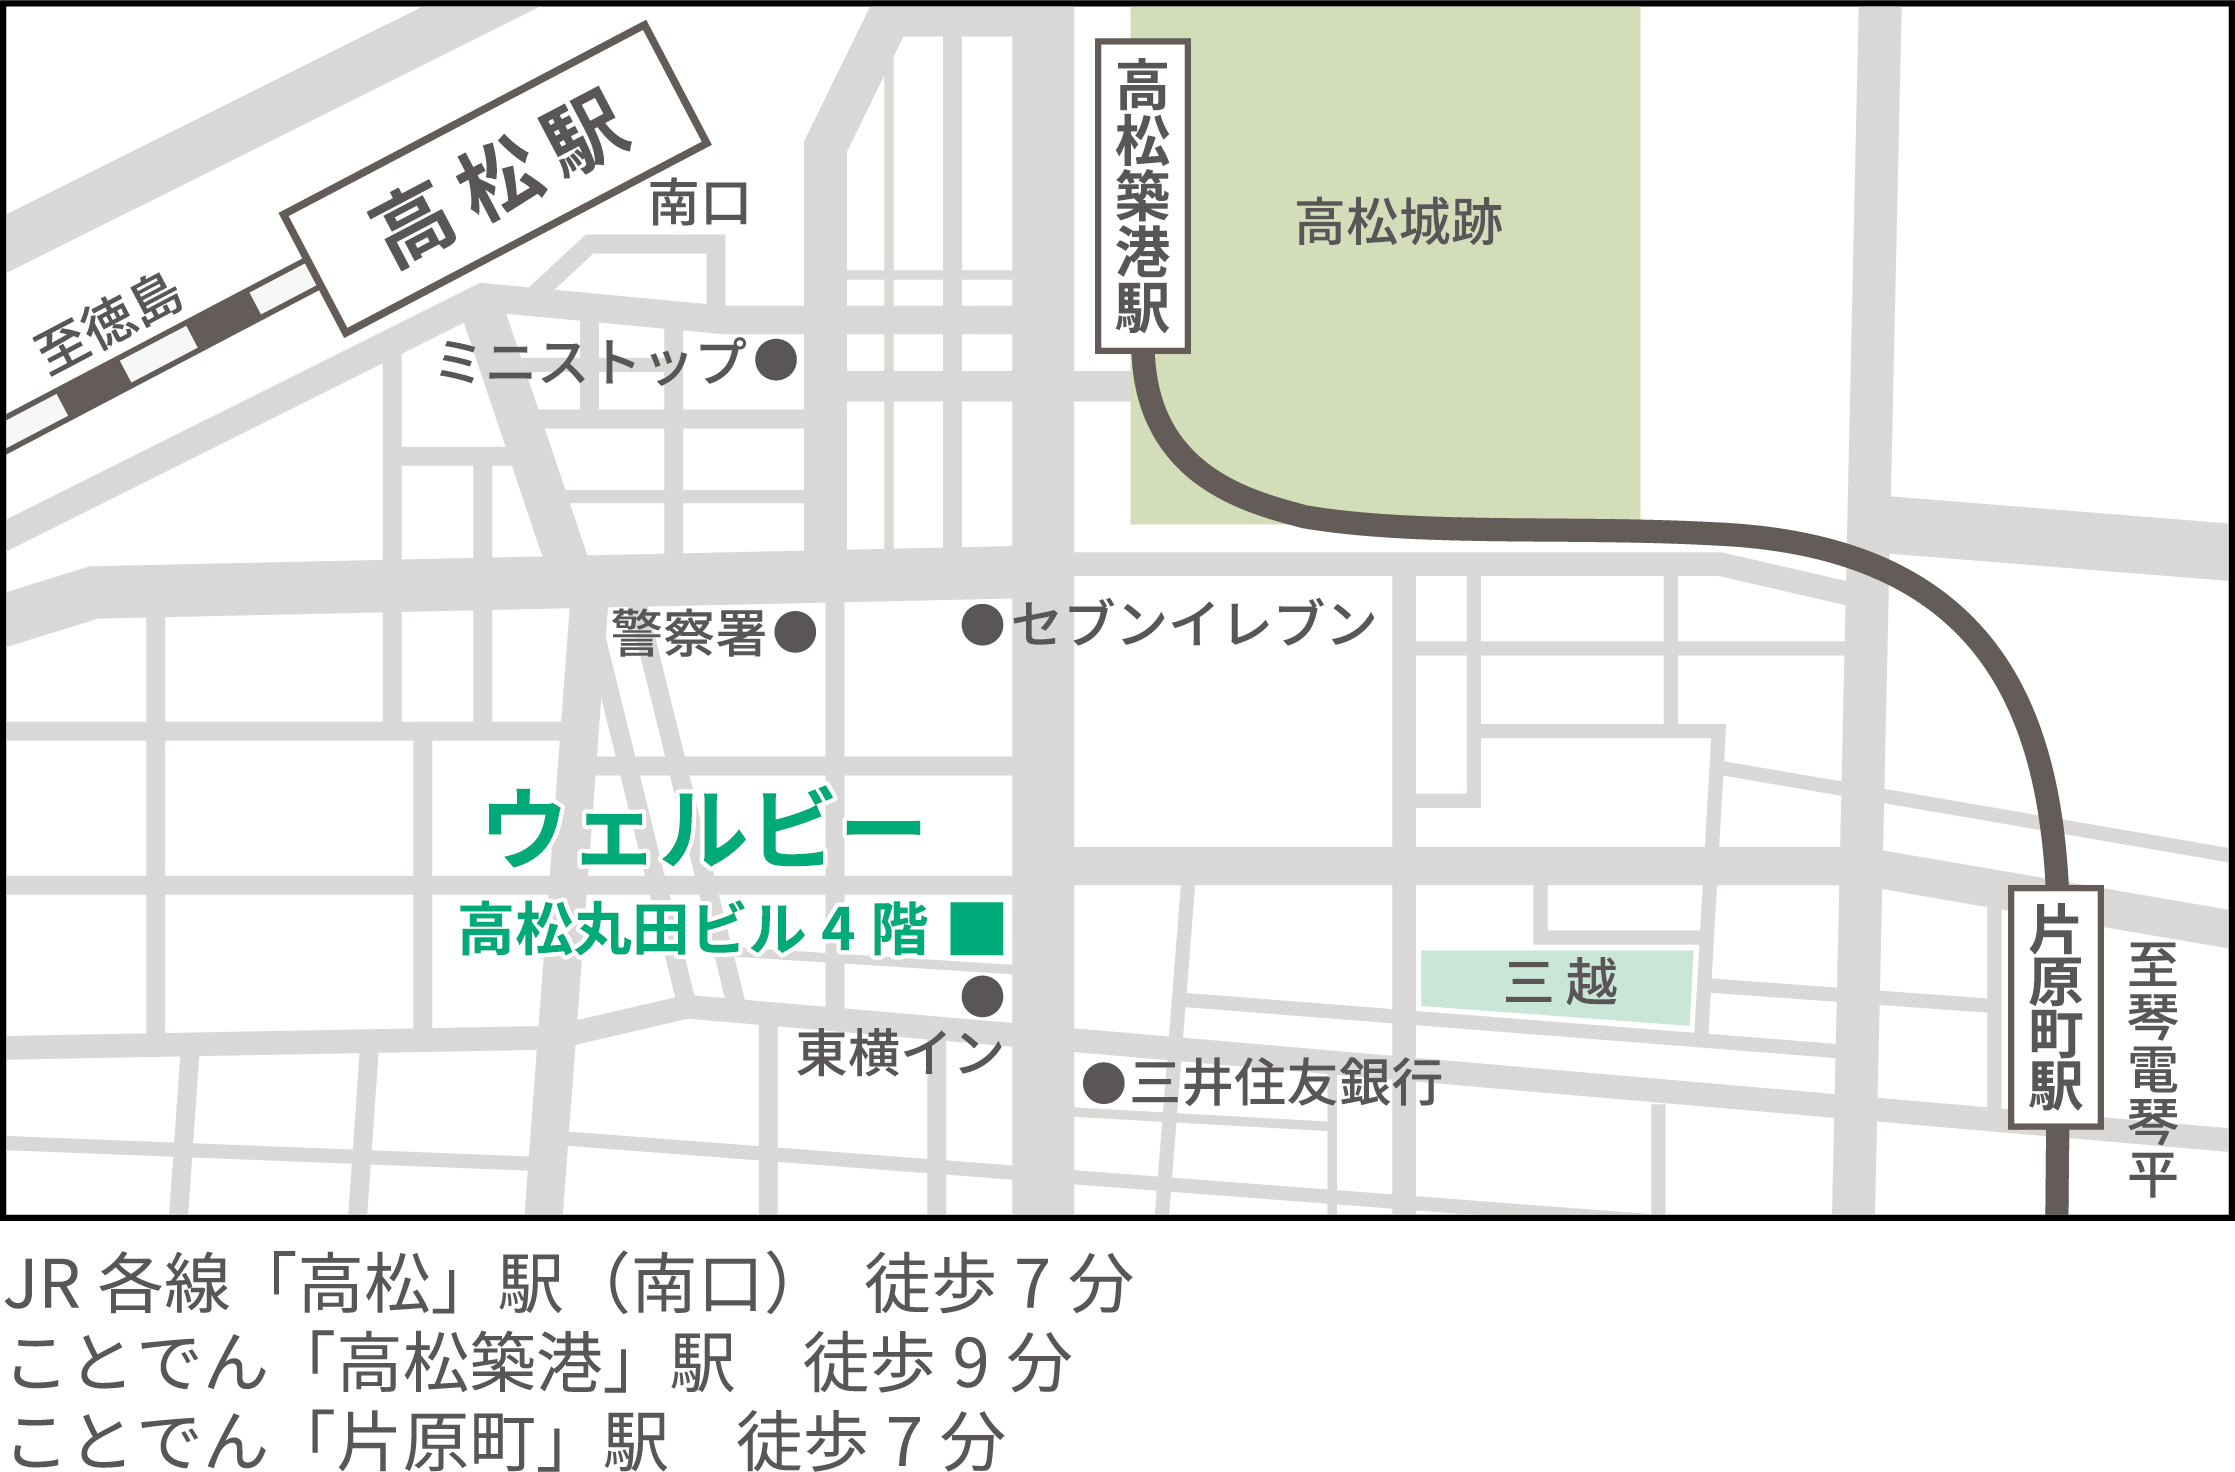 ウェルビー高松センター地図+(1)